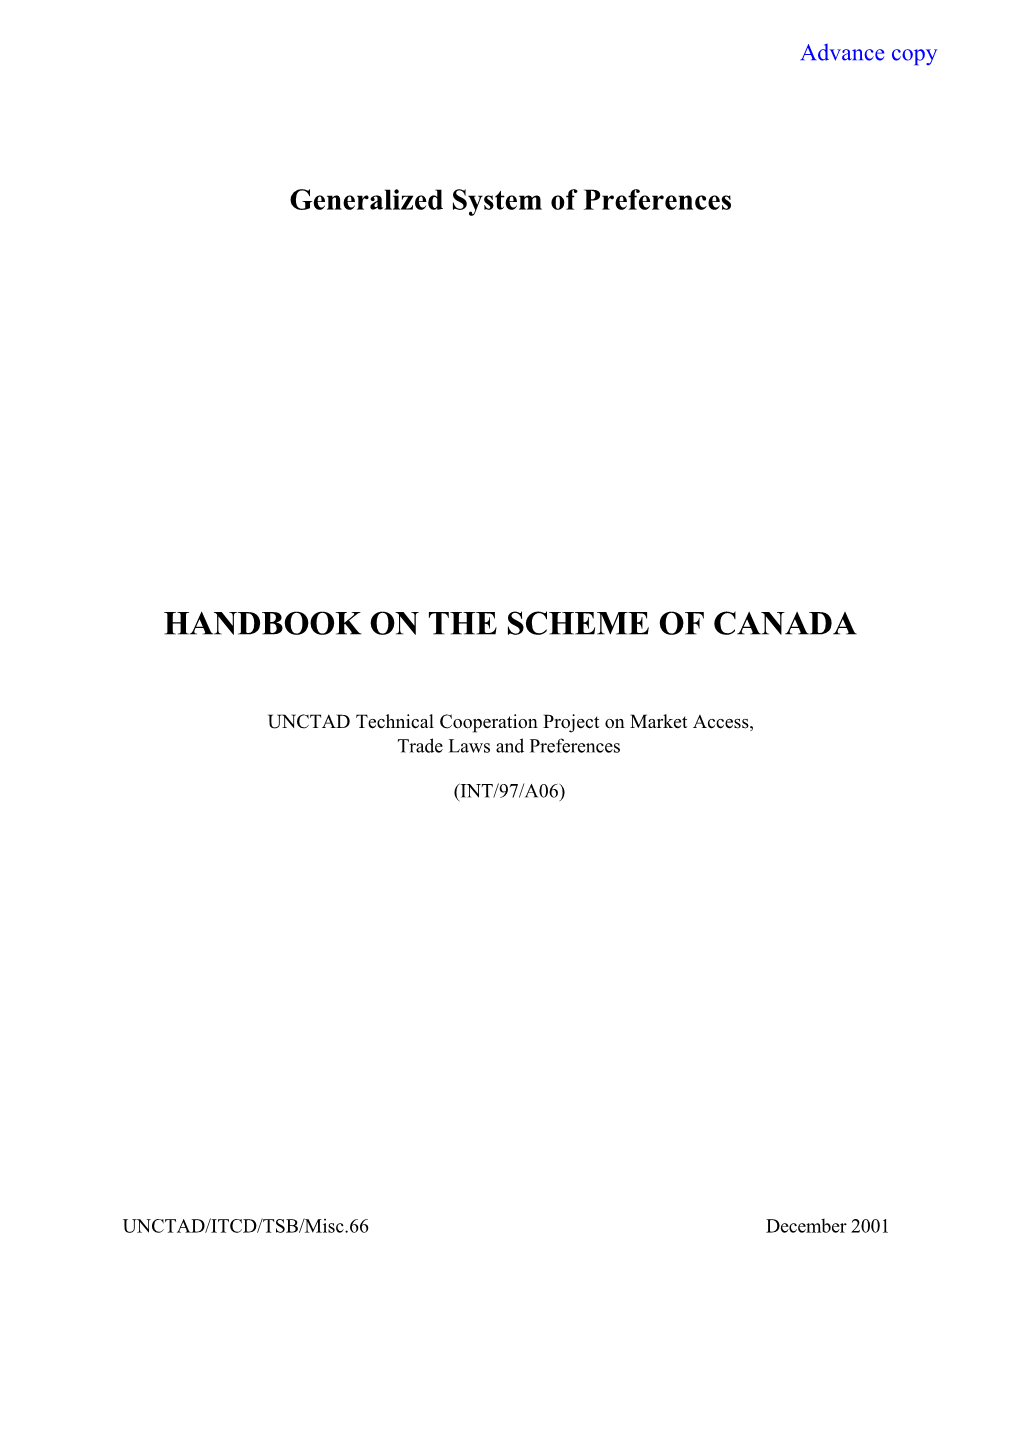 Handbook on the Scheme of Canada